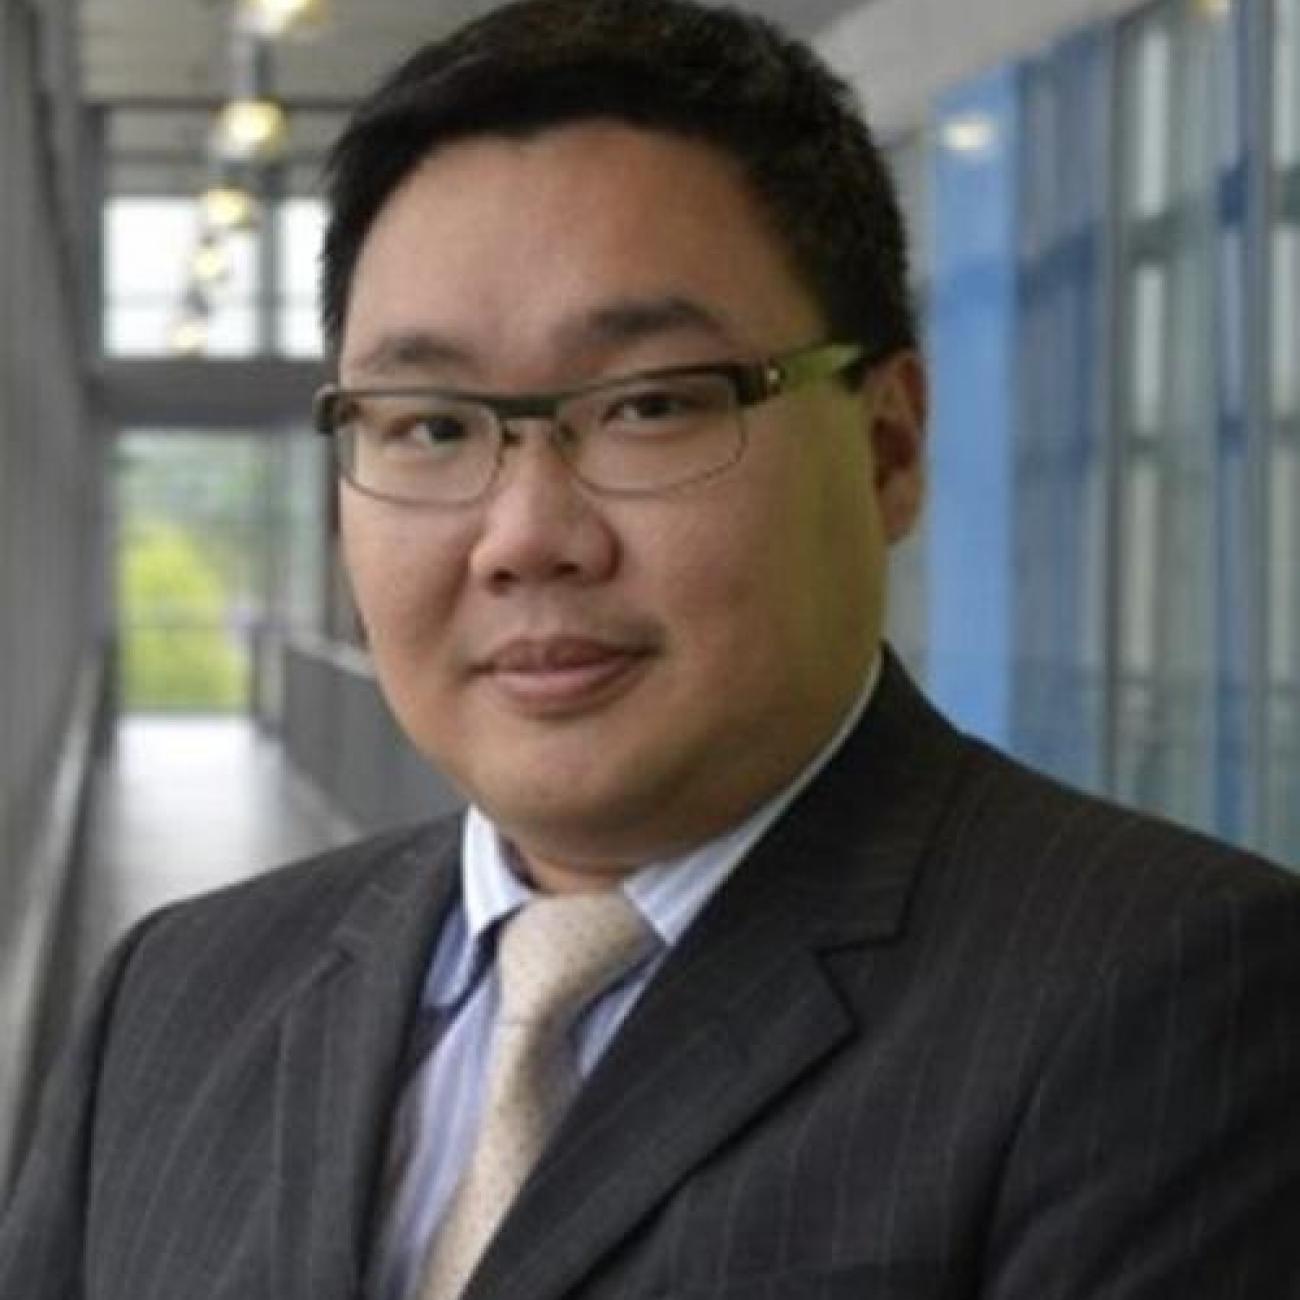 Doctor Steve Chen